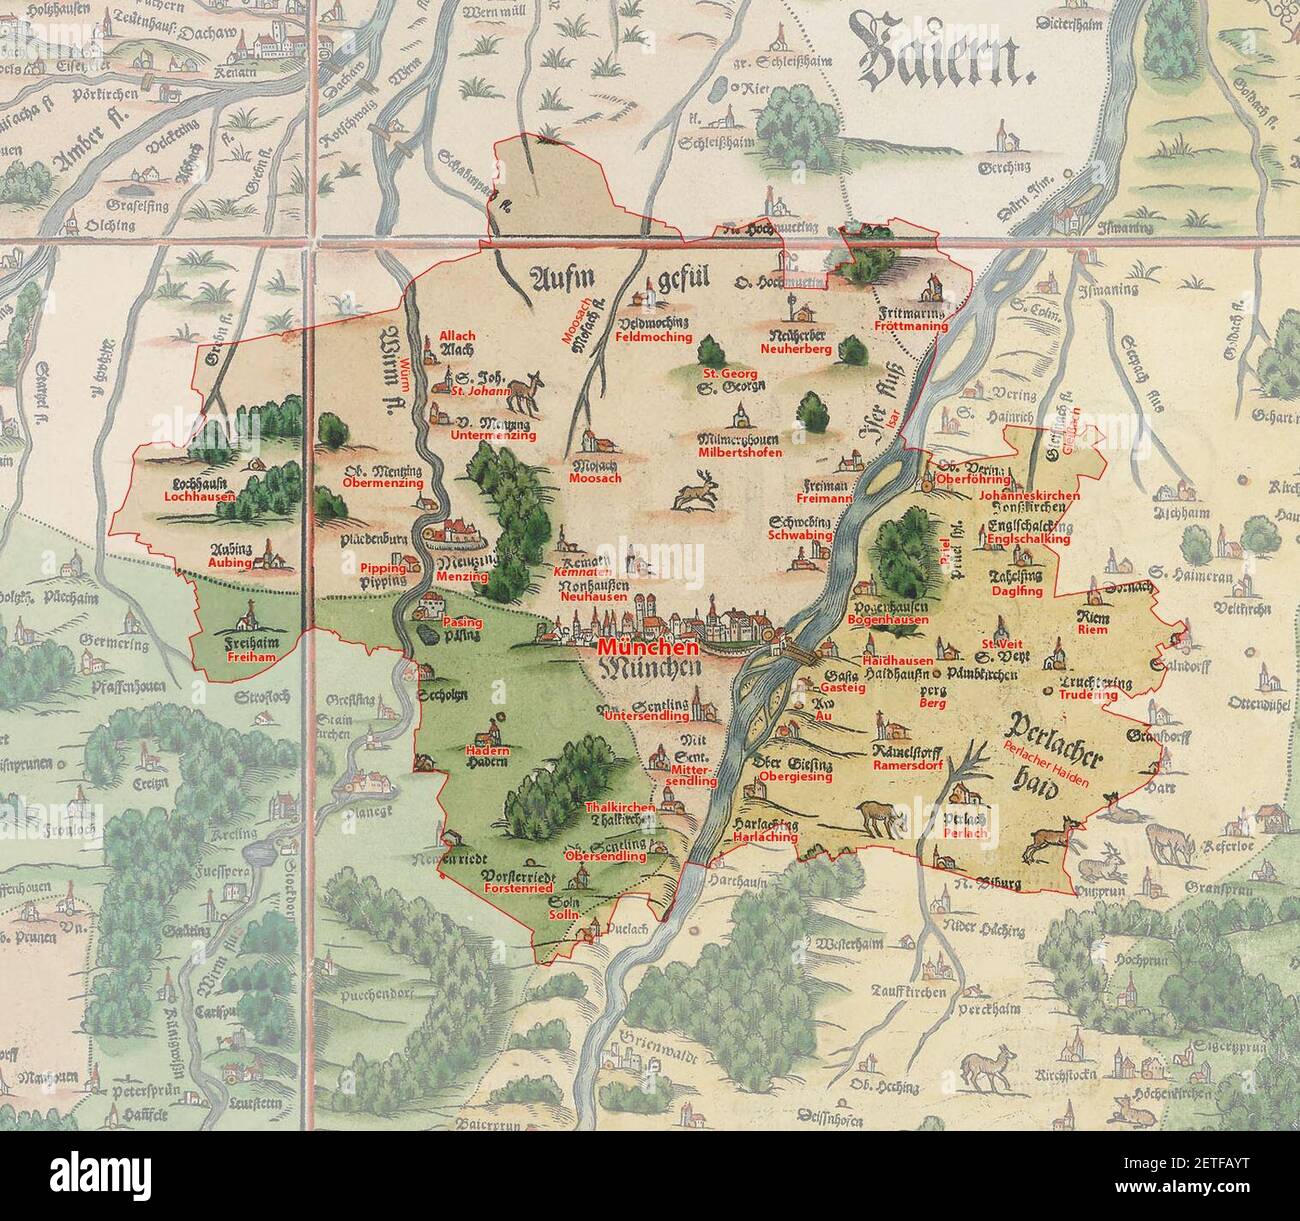 1568 Apian - Bairische Landtafeln von München - Ausschnitt Landtafeln (Gegenüberstellung). Foto Stock